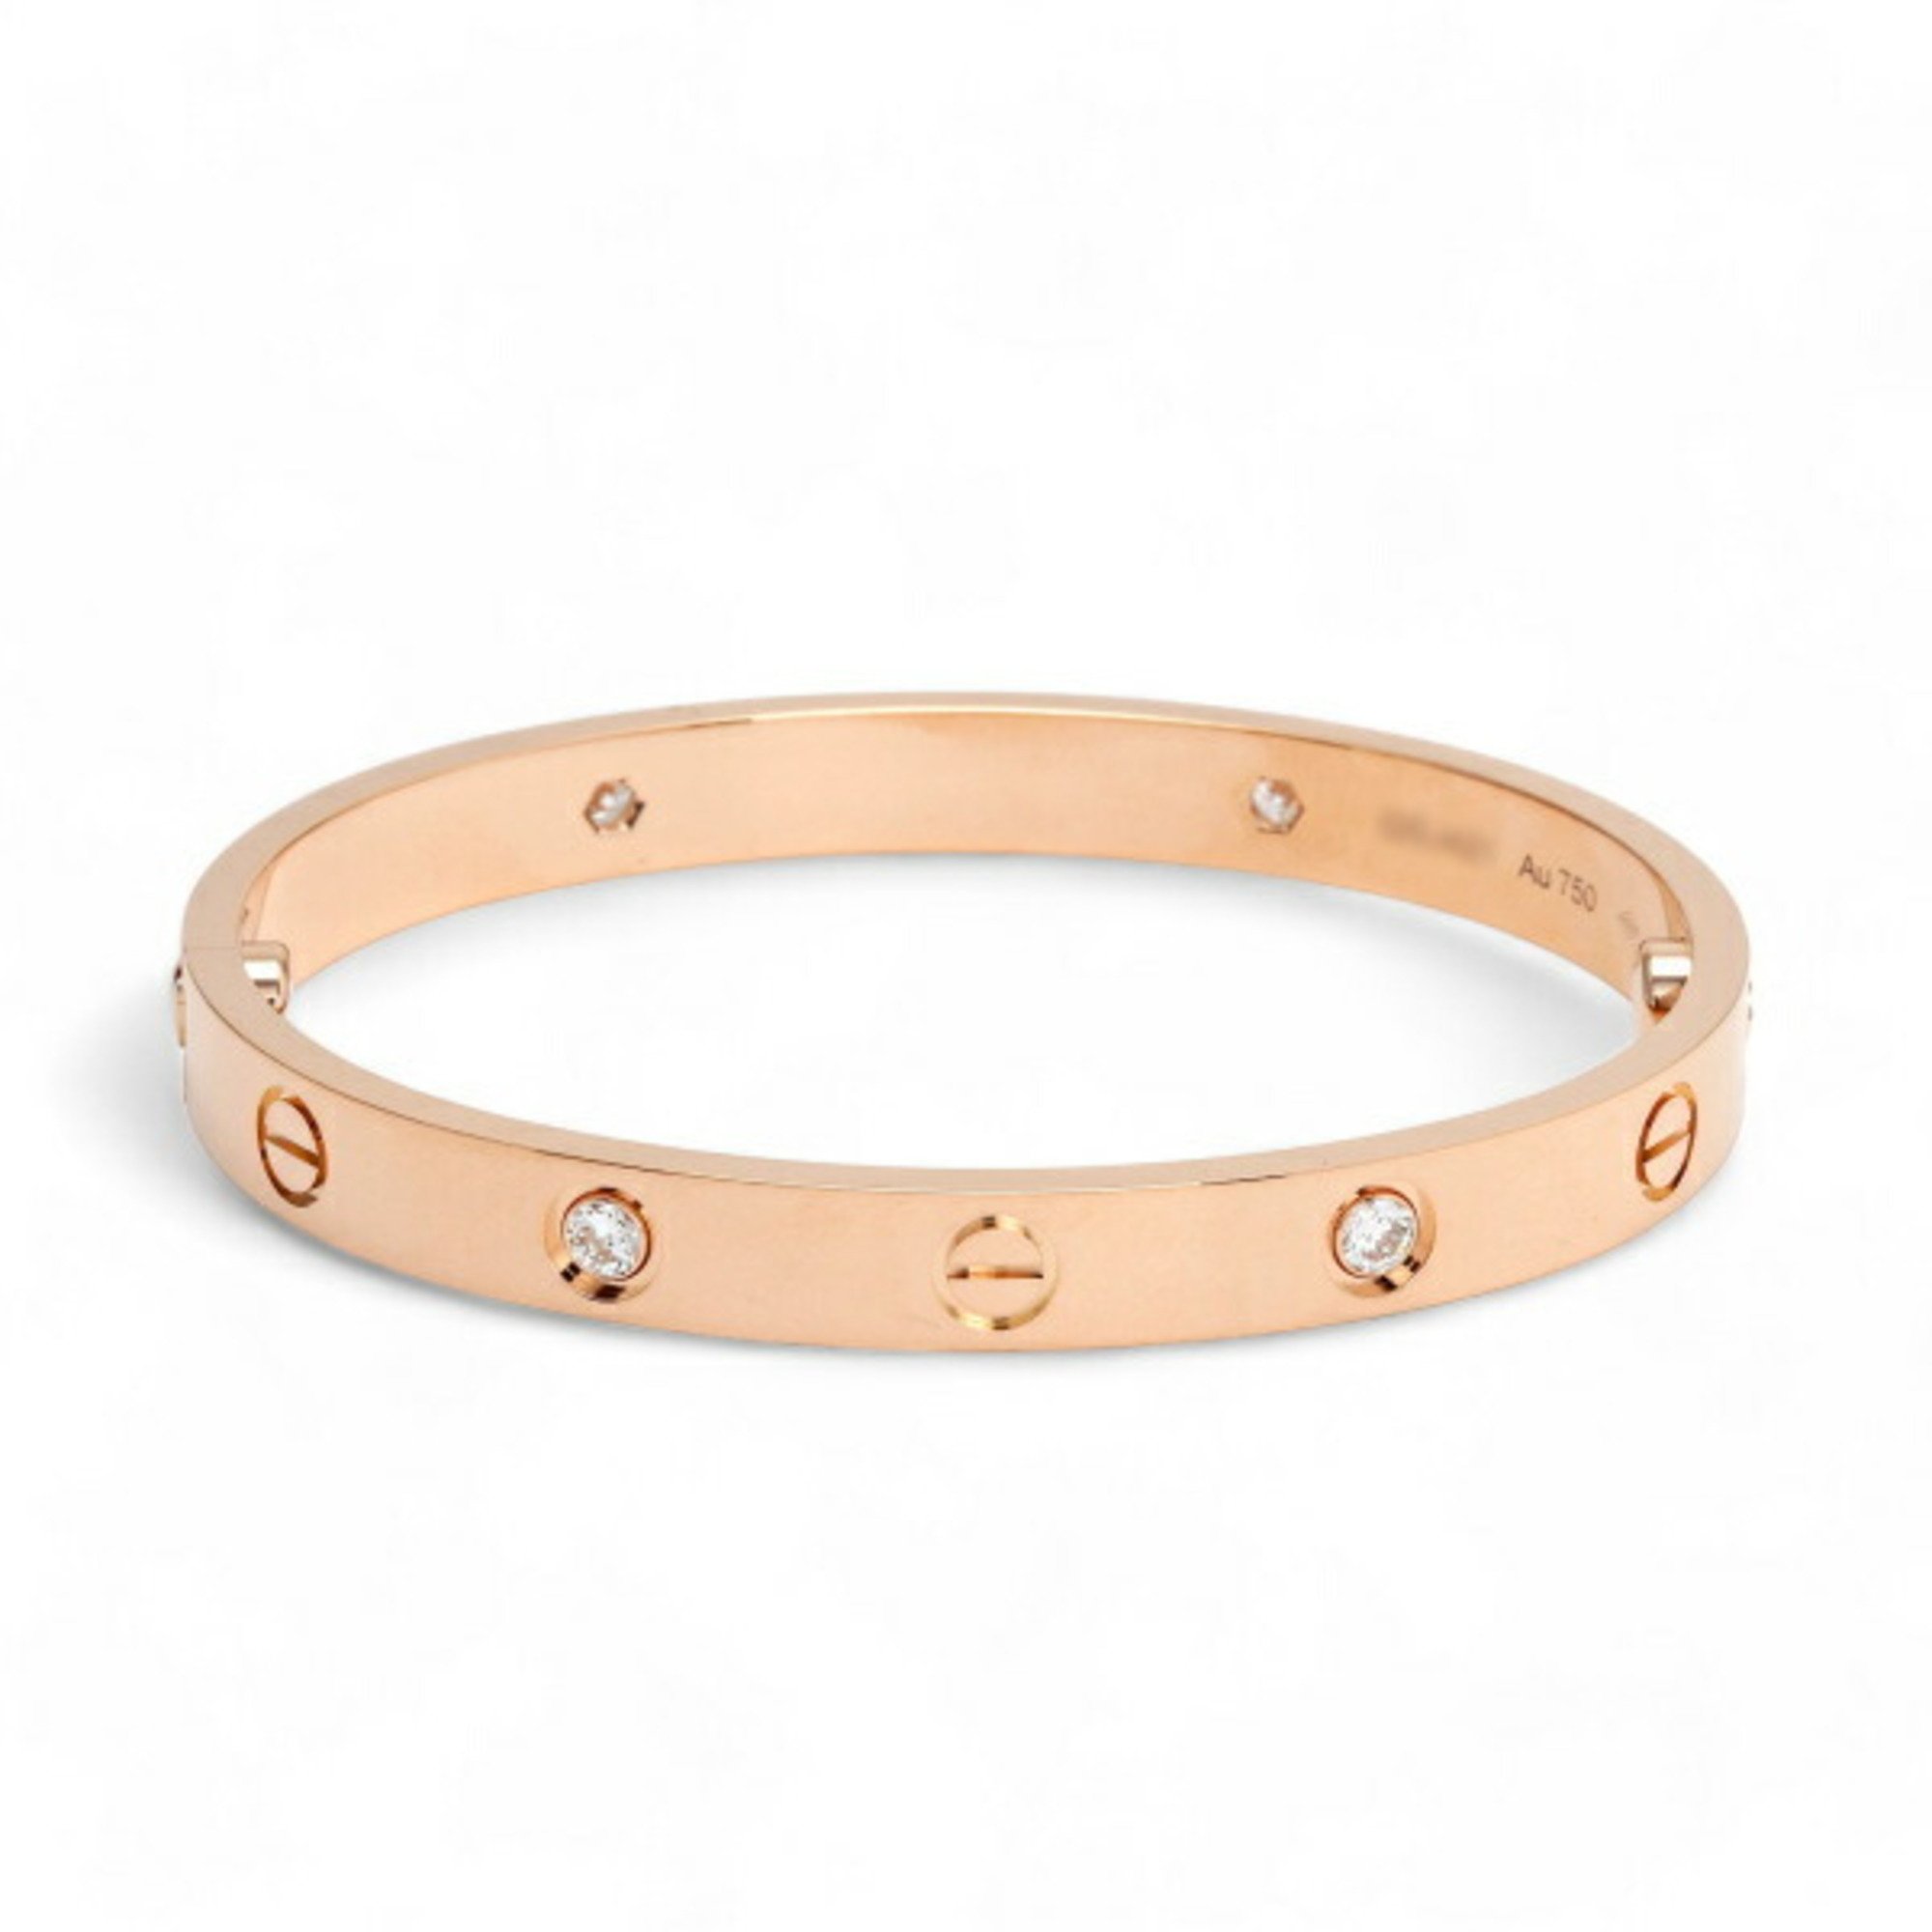 Cartier Love K18PG Pink Gold Bracelet